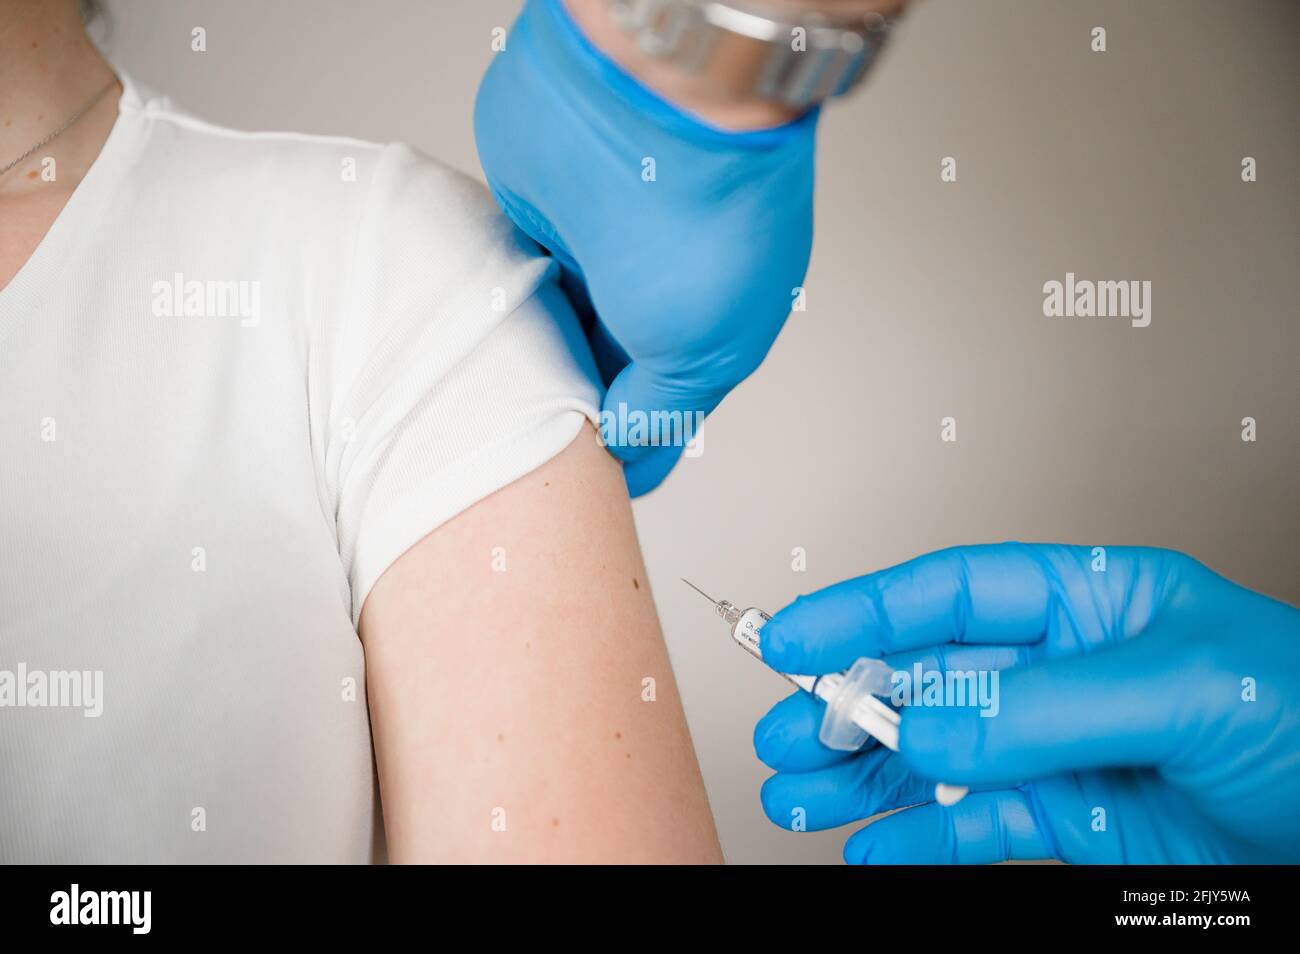 Médecin injectant le vaccin Covid dans le bras d'un patient : guérir la pandémie de Corona avec la vaccination de masse Banque D'Images